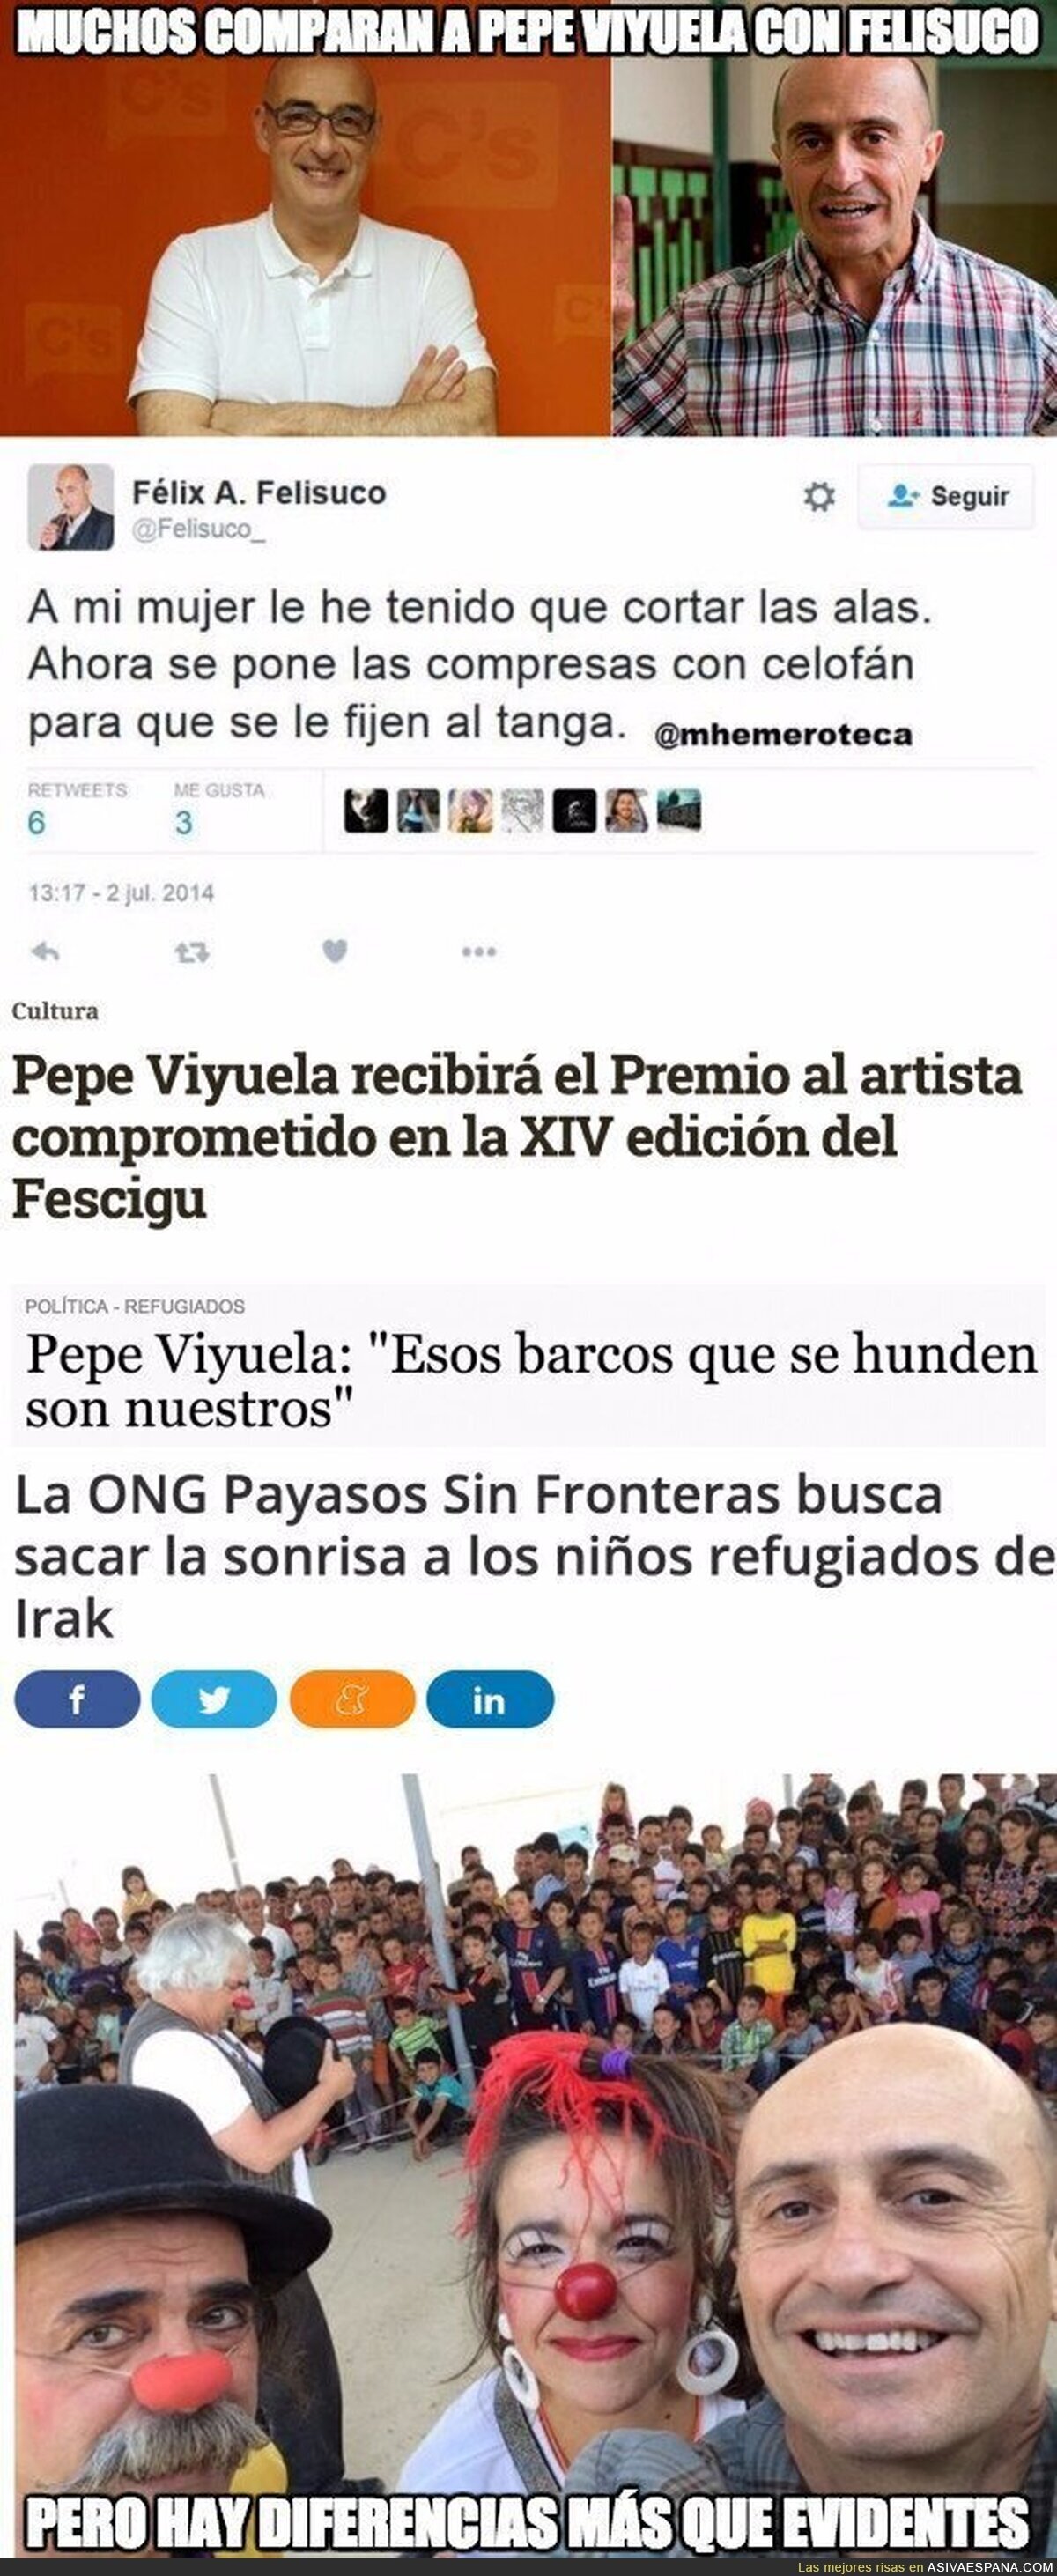 La gran diferencia entre Pepe Viyuela (Podemos) y Felisuco (Ciudadanos)